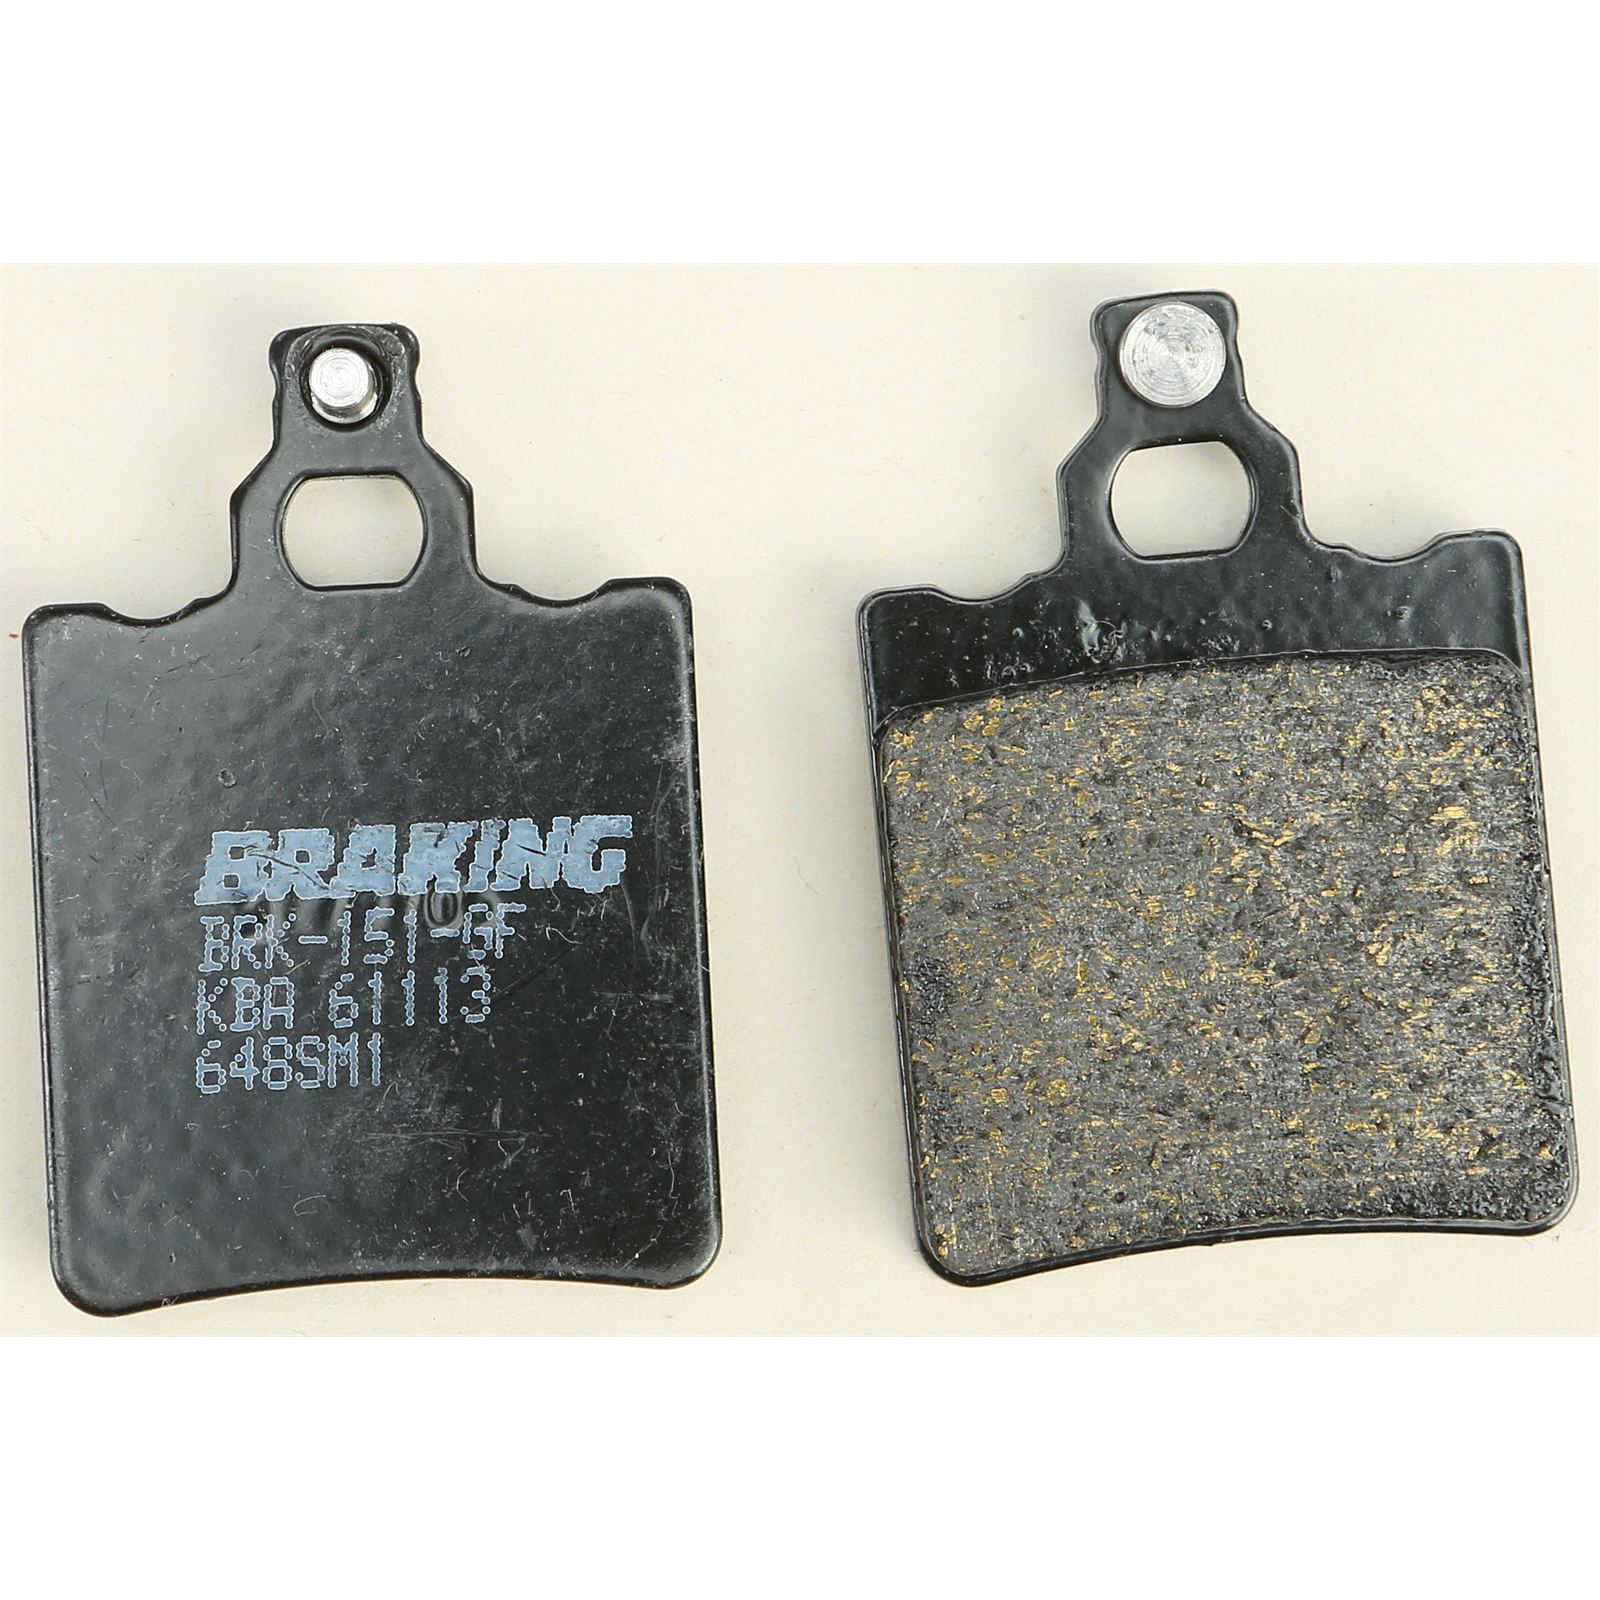 Braking SM1 Semi Metallic Pad 786SM1 